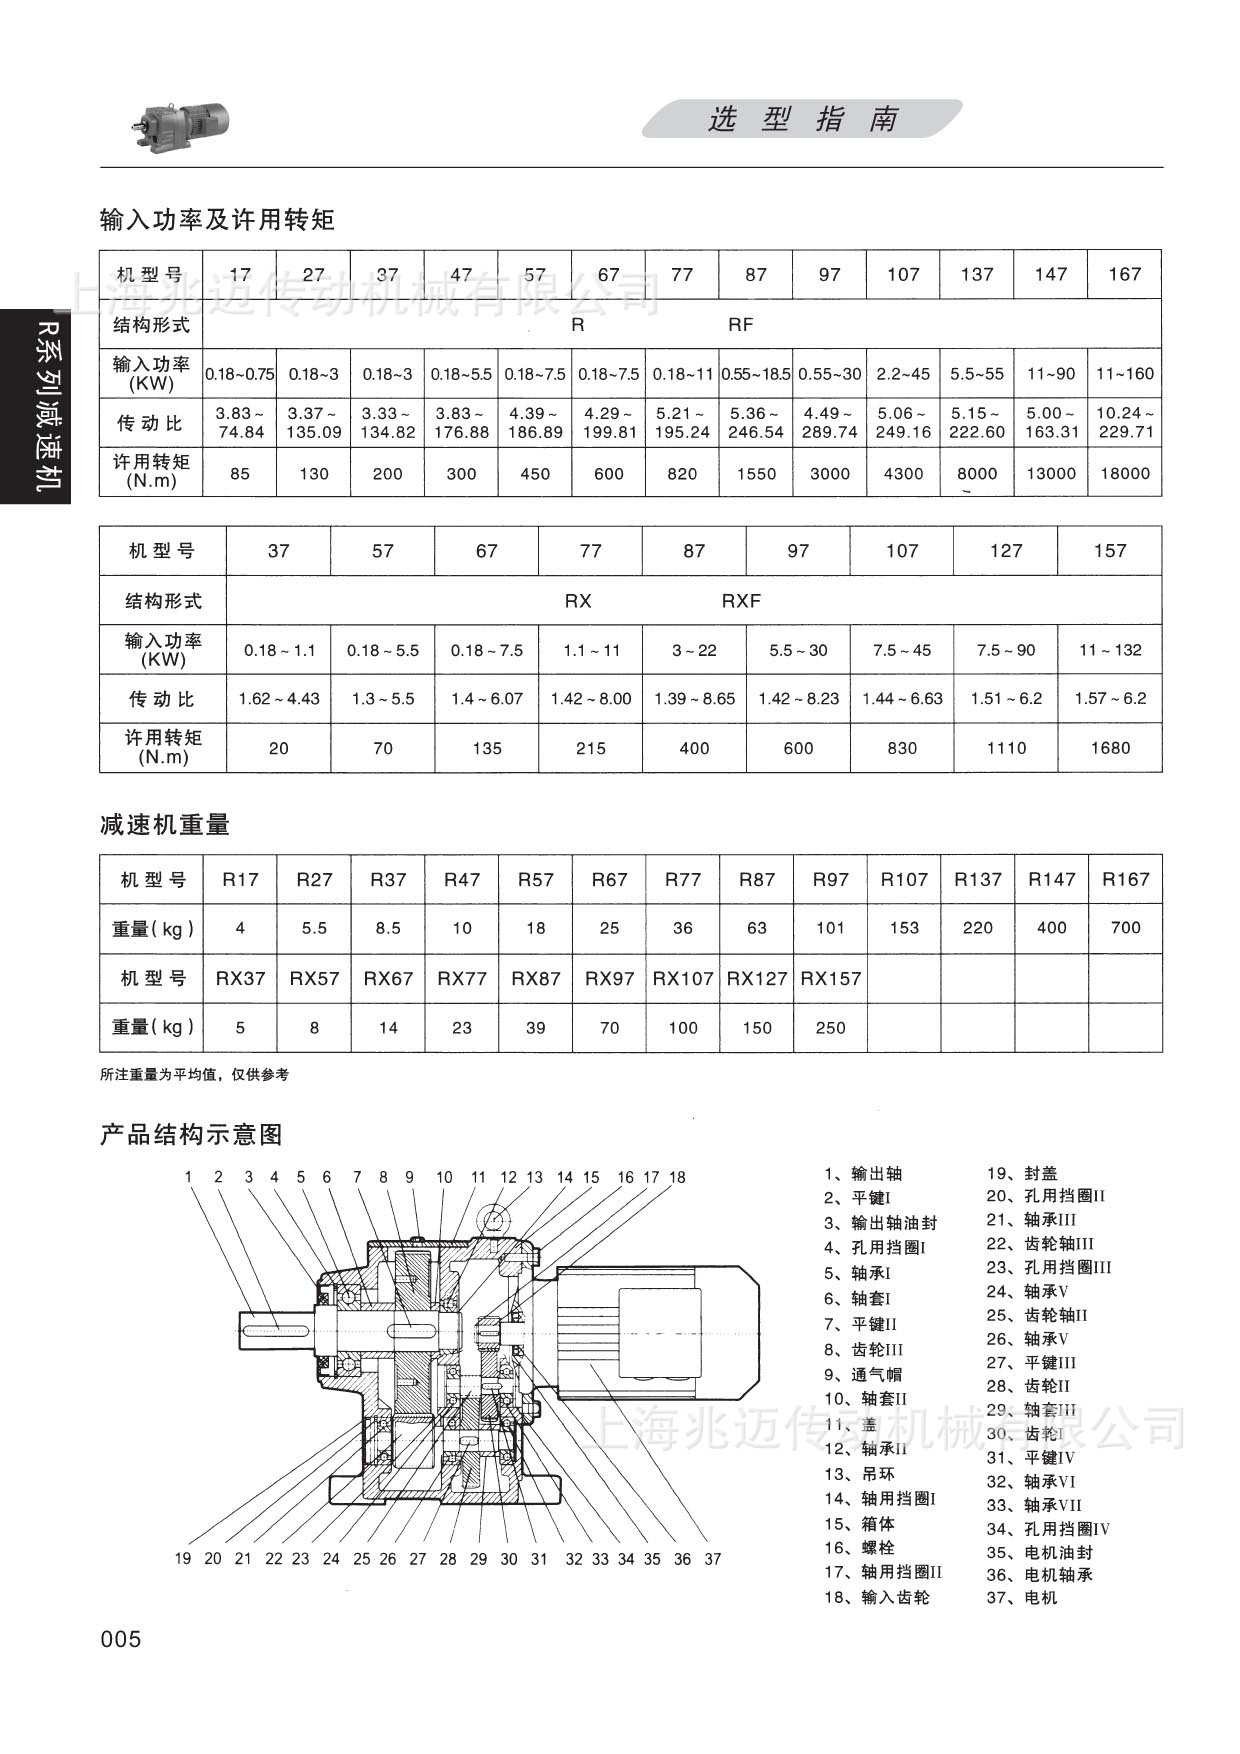 上海兆迈供应 R97 斜齿轮硬齿面减速机 卧式减速机 高效率减速机 减速机,R系列减速机,斜齿轮减速机,上海减速机生产厂家,卧式减速机